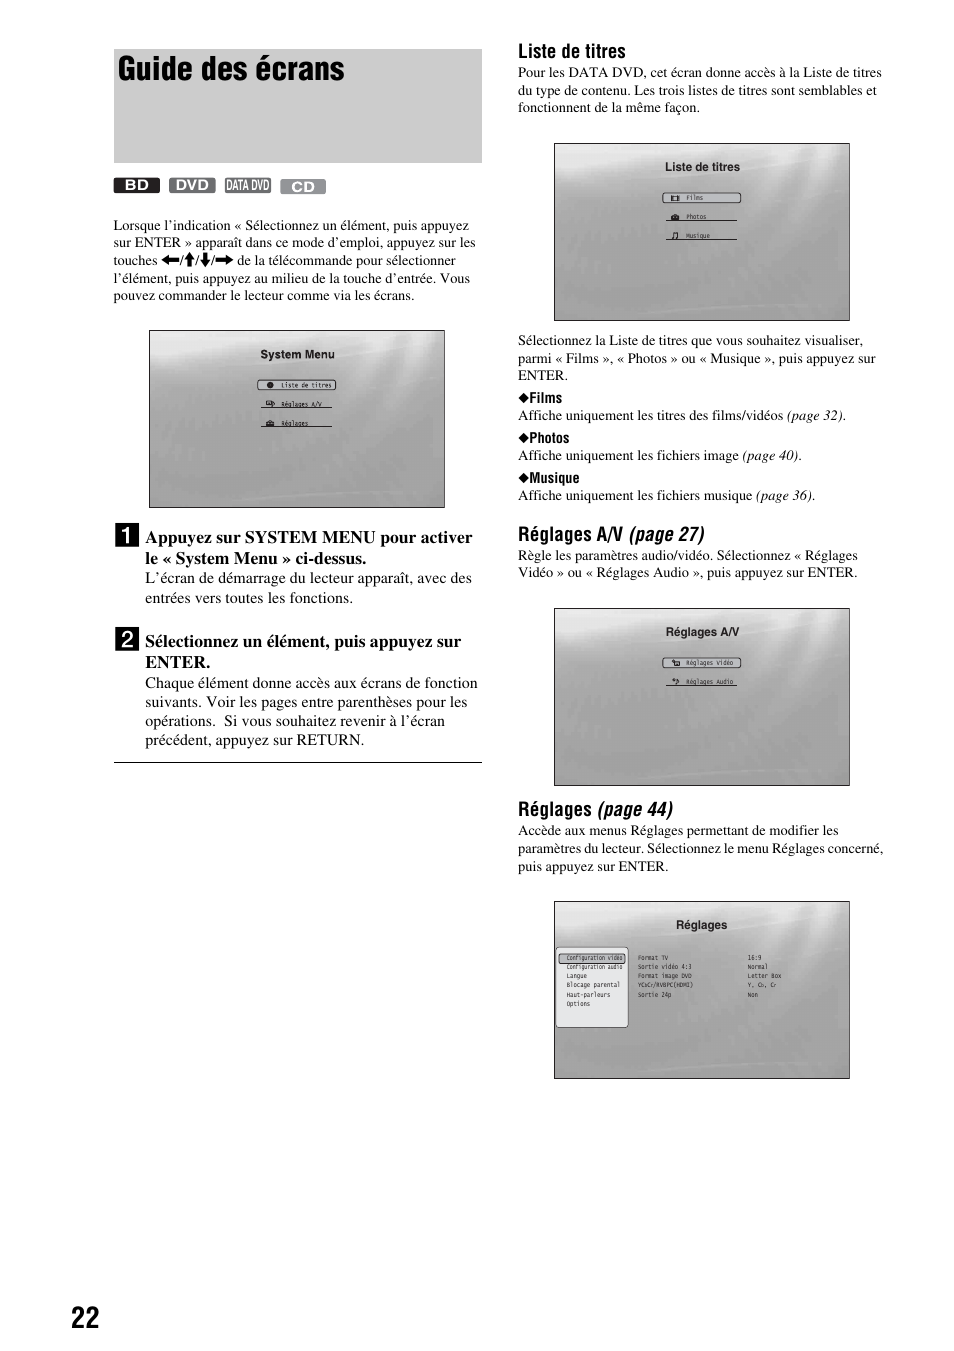 Guide des écrans, Liste de titres, Réglages a/v (page 27) | Réglages (page 44), Sélectionnez un élément, puis appuyez sur enter | Sony BDP-S300 Manuel d'utilisation | Page 22 / 67